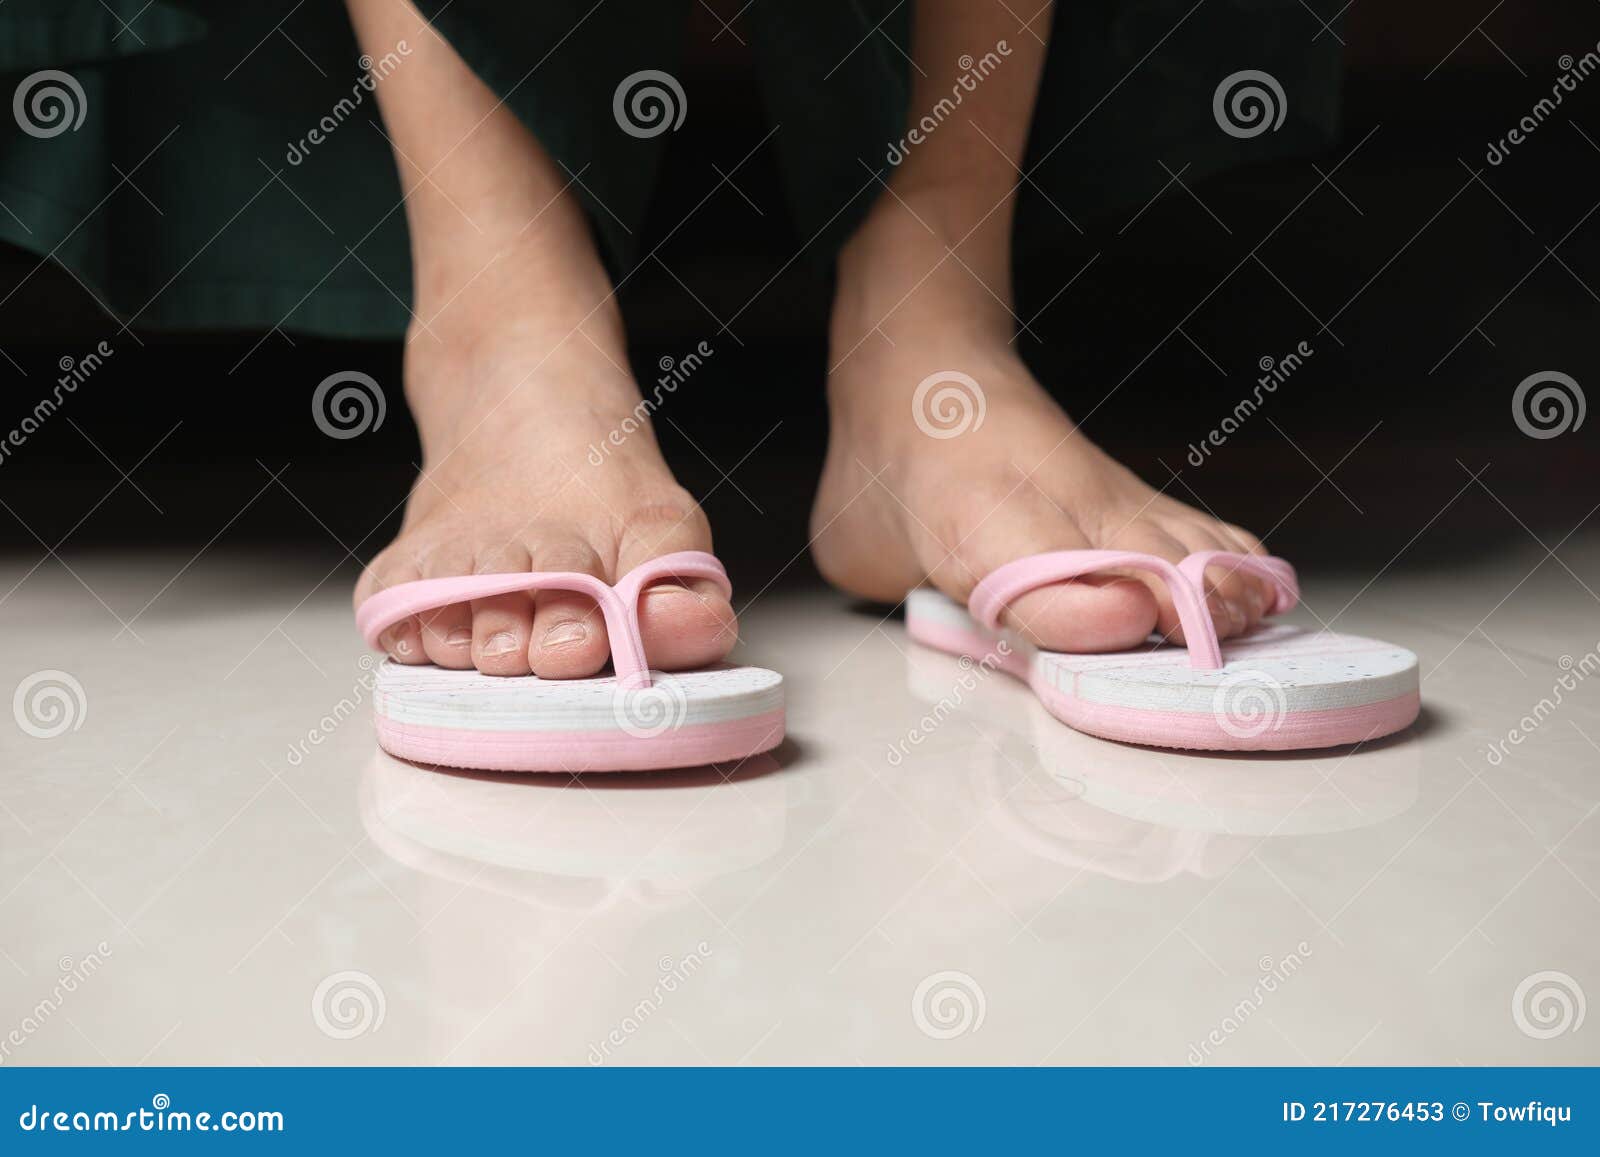 Women Feet in a Sendal on Floor Mat Stock Image - Image of modern ...